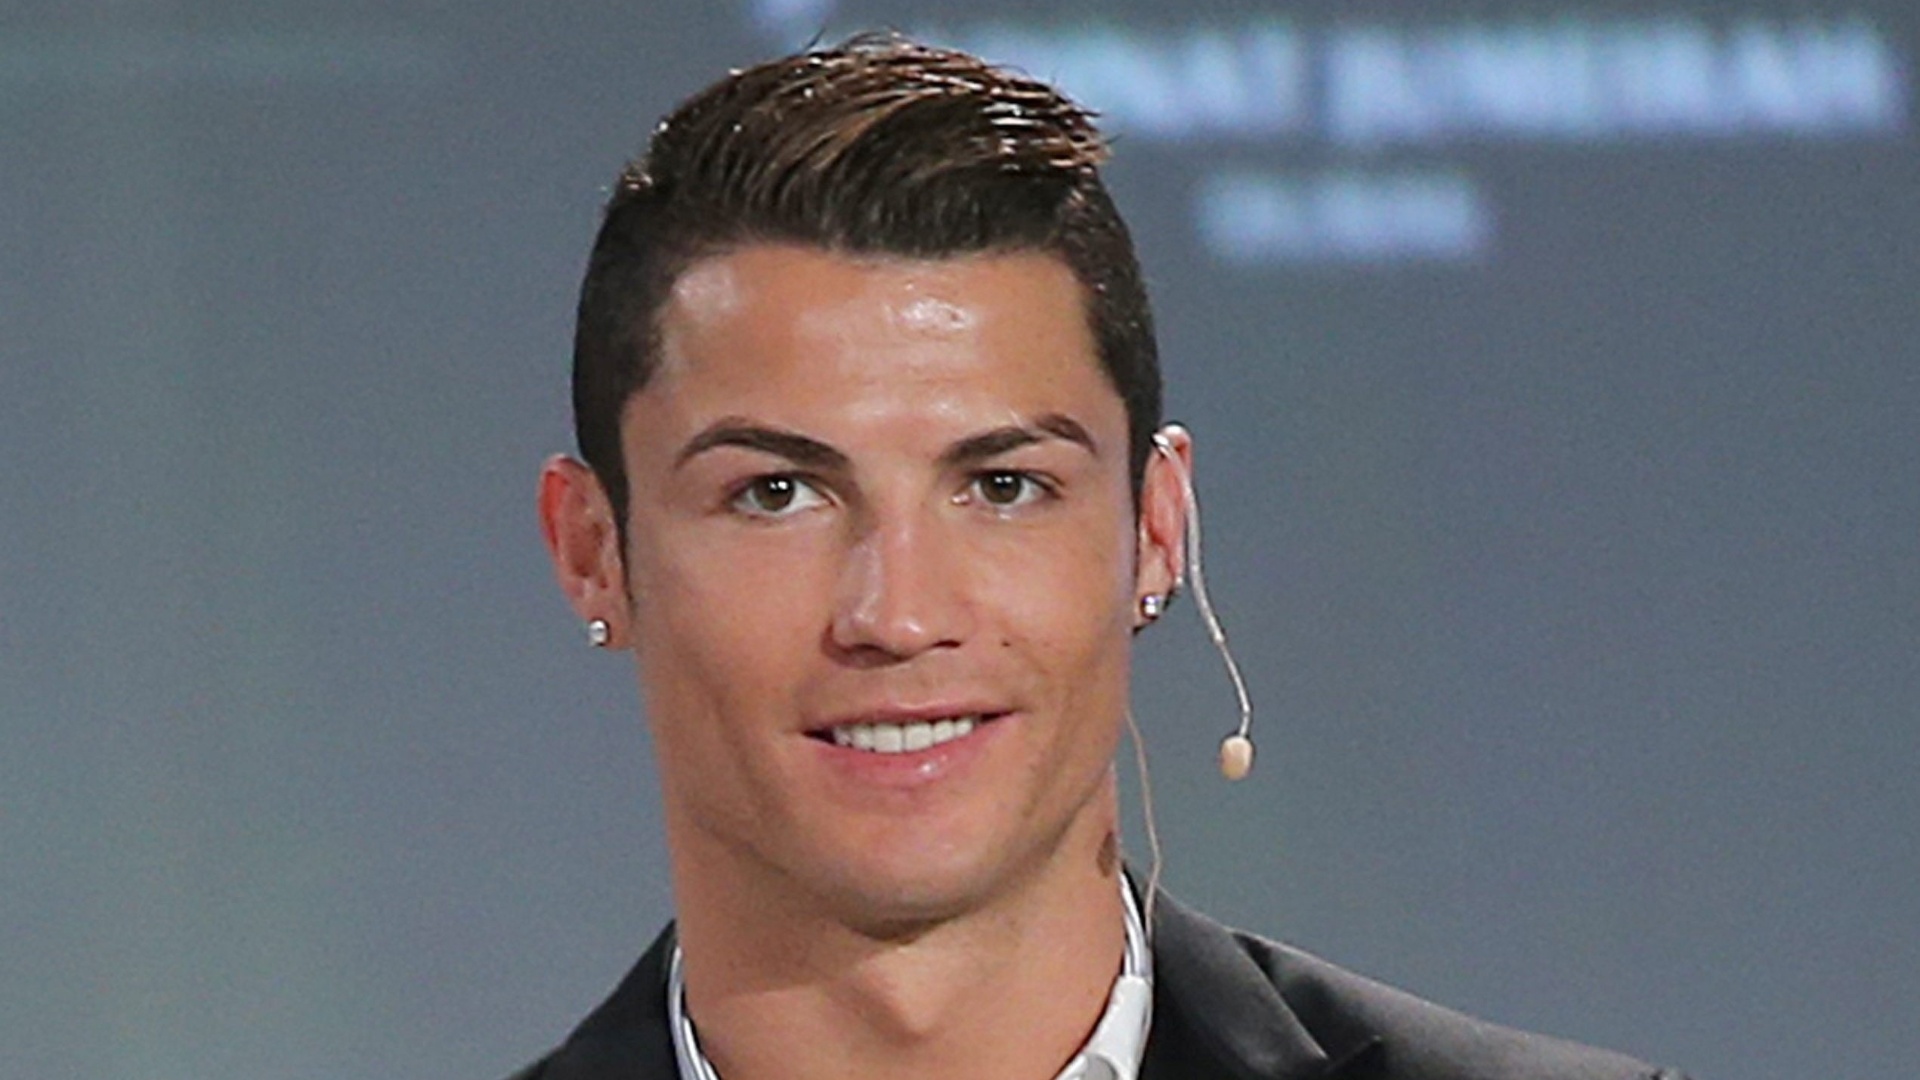 ... - BalÃ³n de Oro 2014: Cristiano Ronaldo estÃ¡ seguro que ganarÃ¡